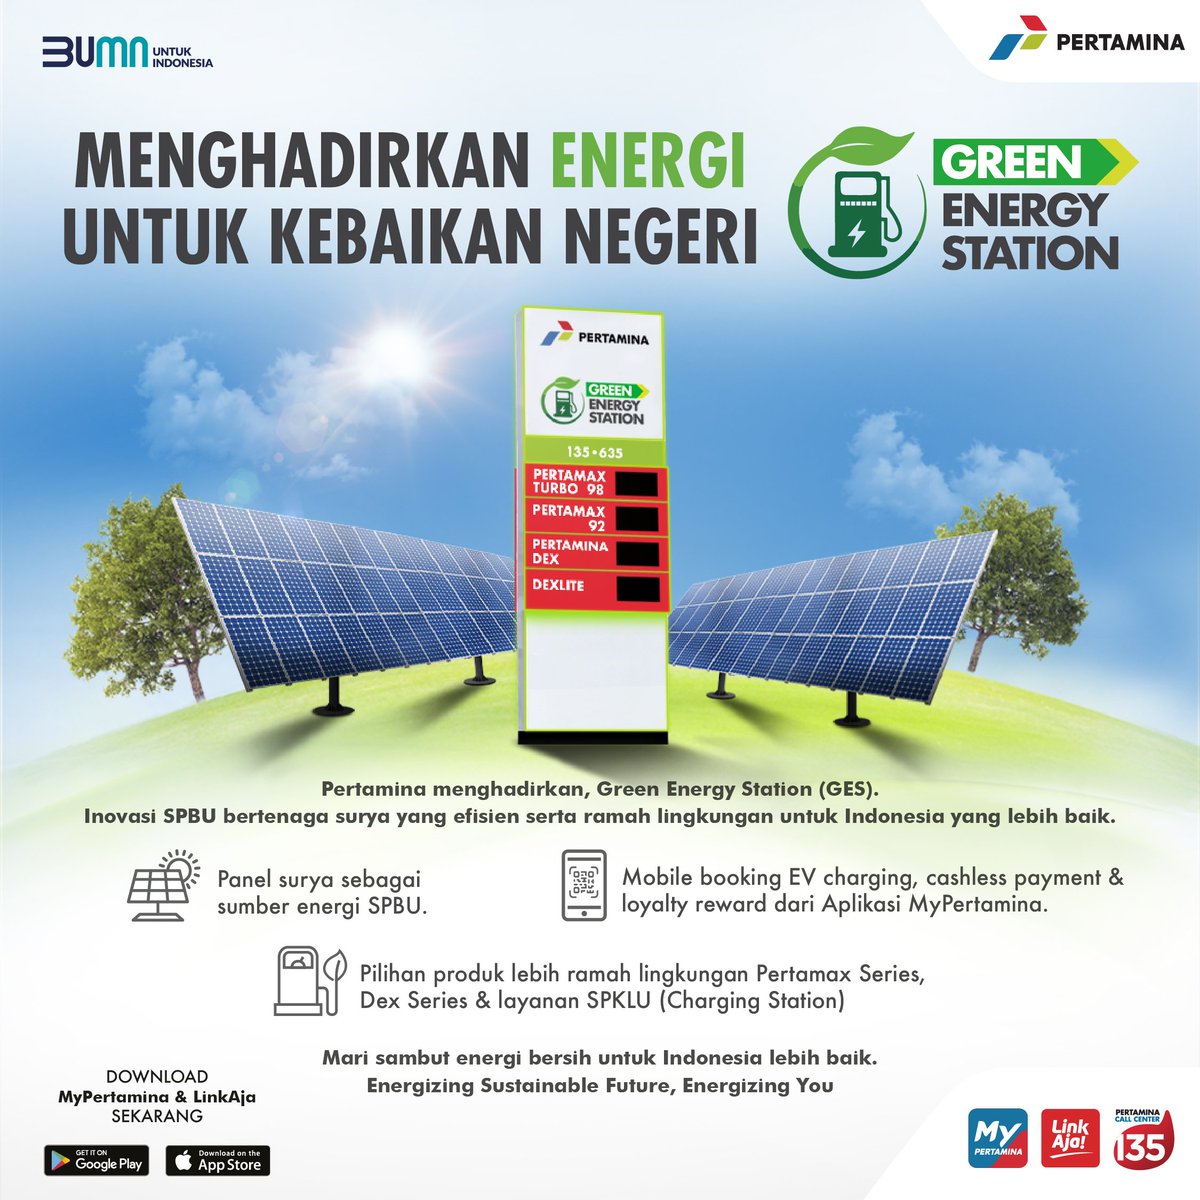 Green Energy Station, Energizing Sustainable future, Energizing You. 
@pertamina
#GreenEnergyStation
#MyPertamina
#Call135
#BerbagiBerkahMyPertamina